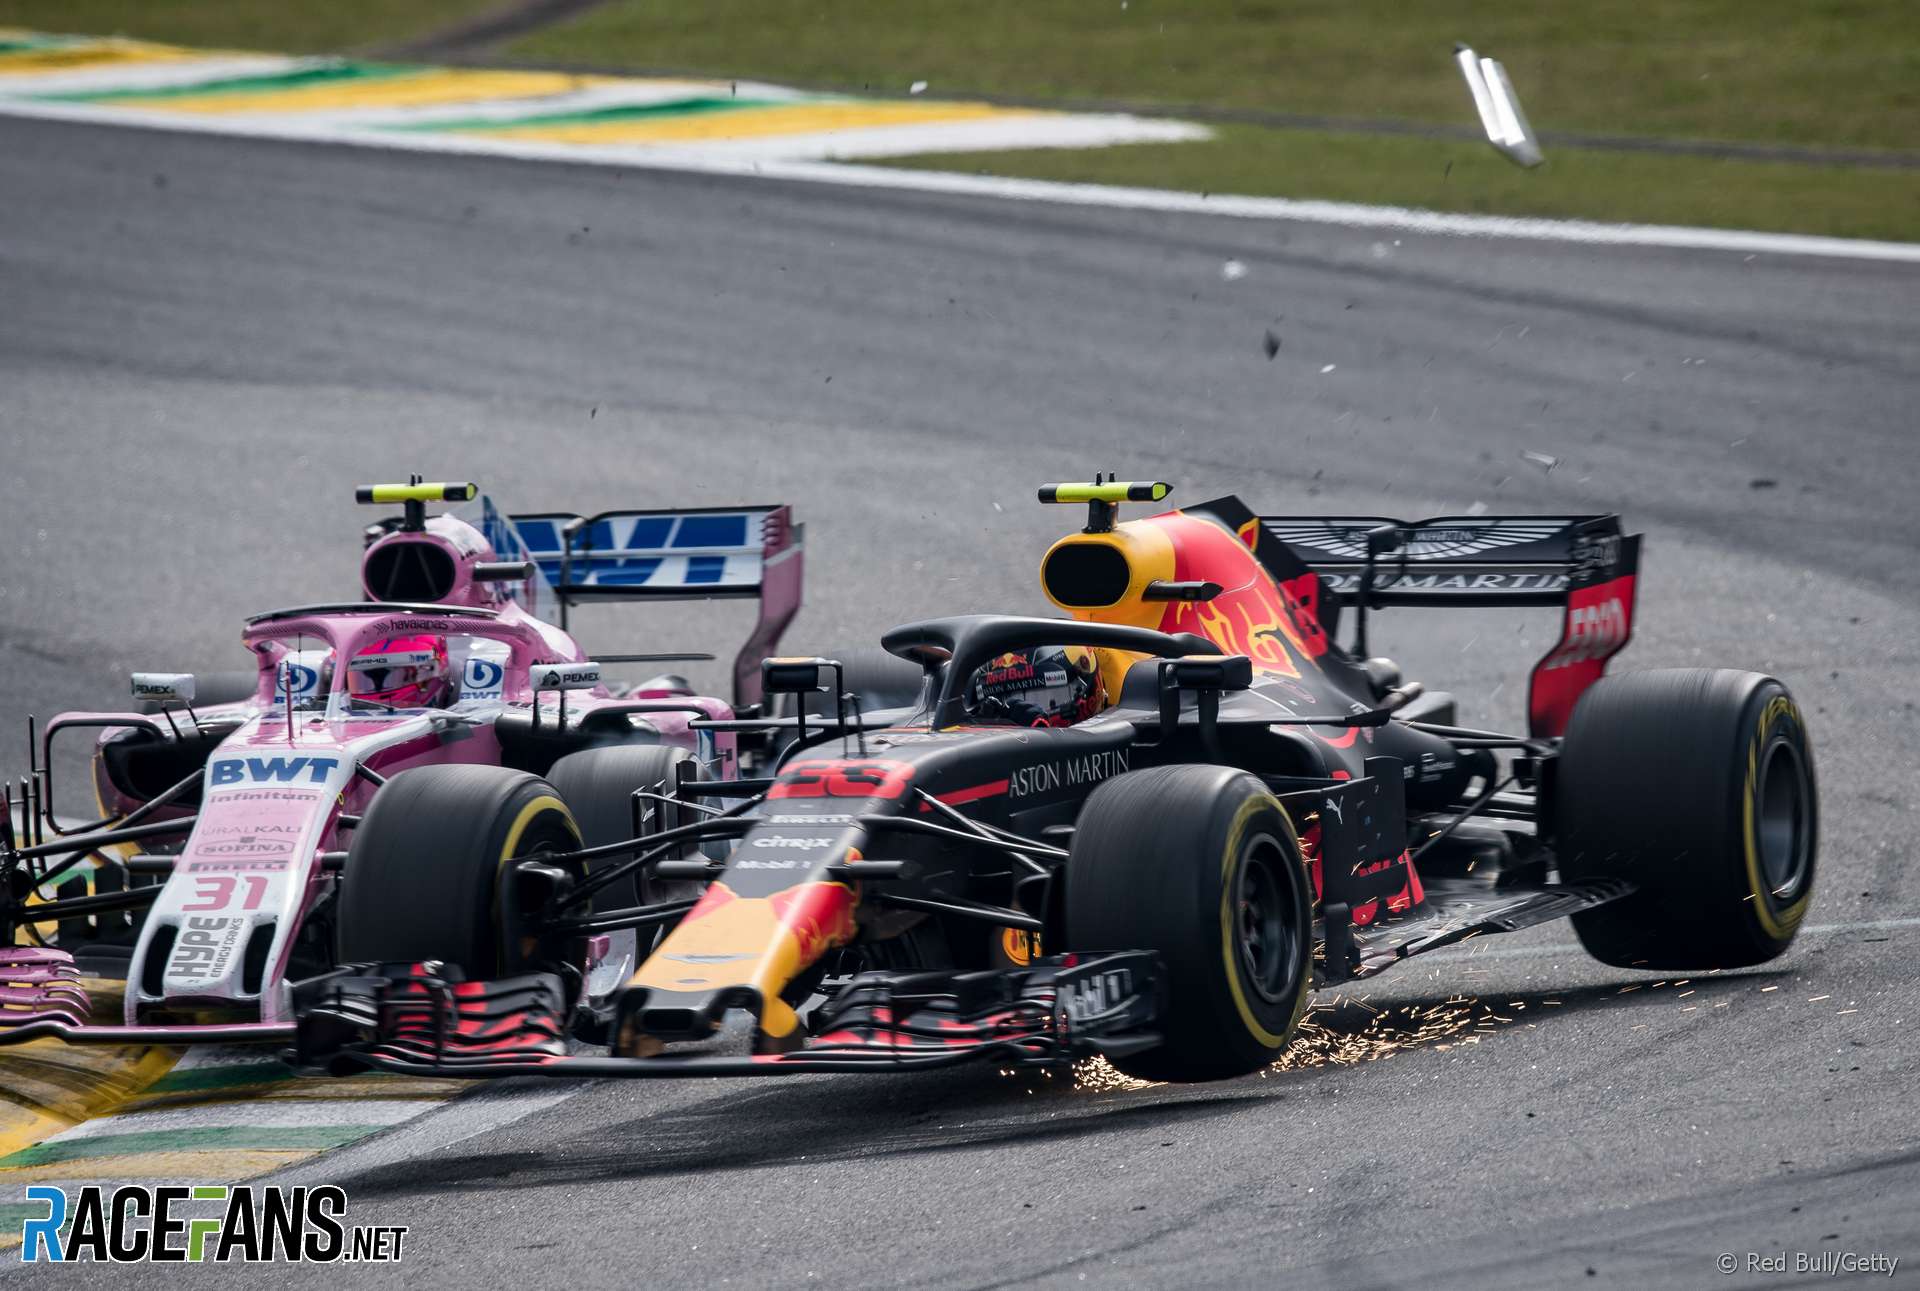 Esteban Ocon, Max Verstappen, Interlagos, 2018